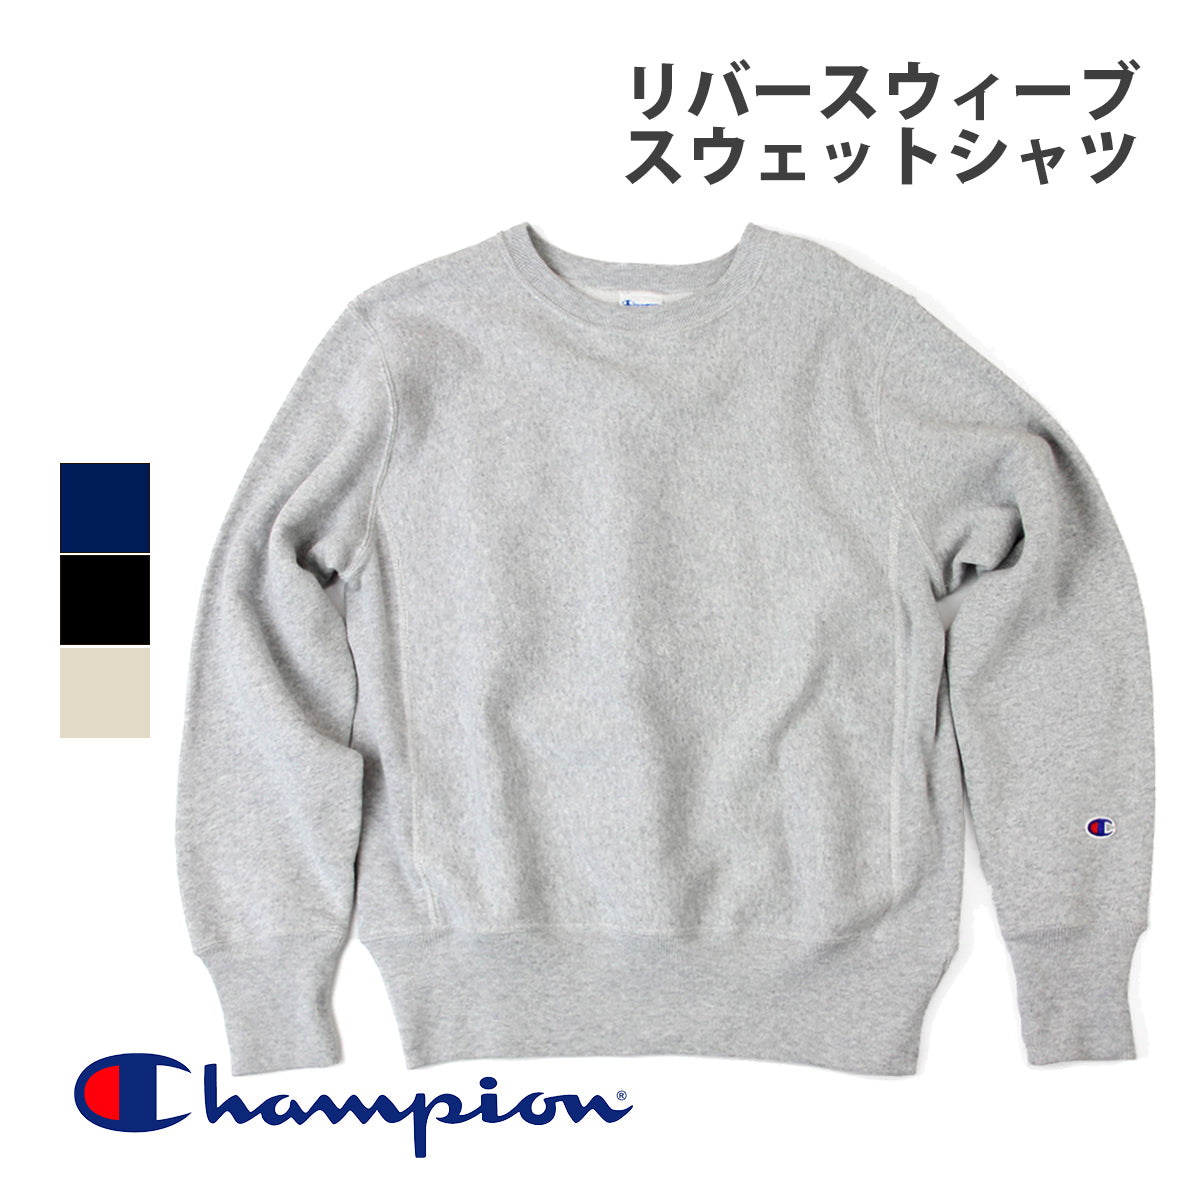 Champion(チャンピオン)/C3-W004/メンズ レディース クルーネックスウェット/メイン